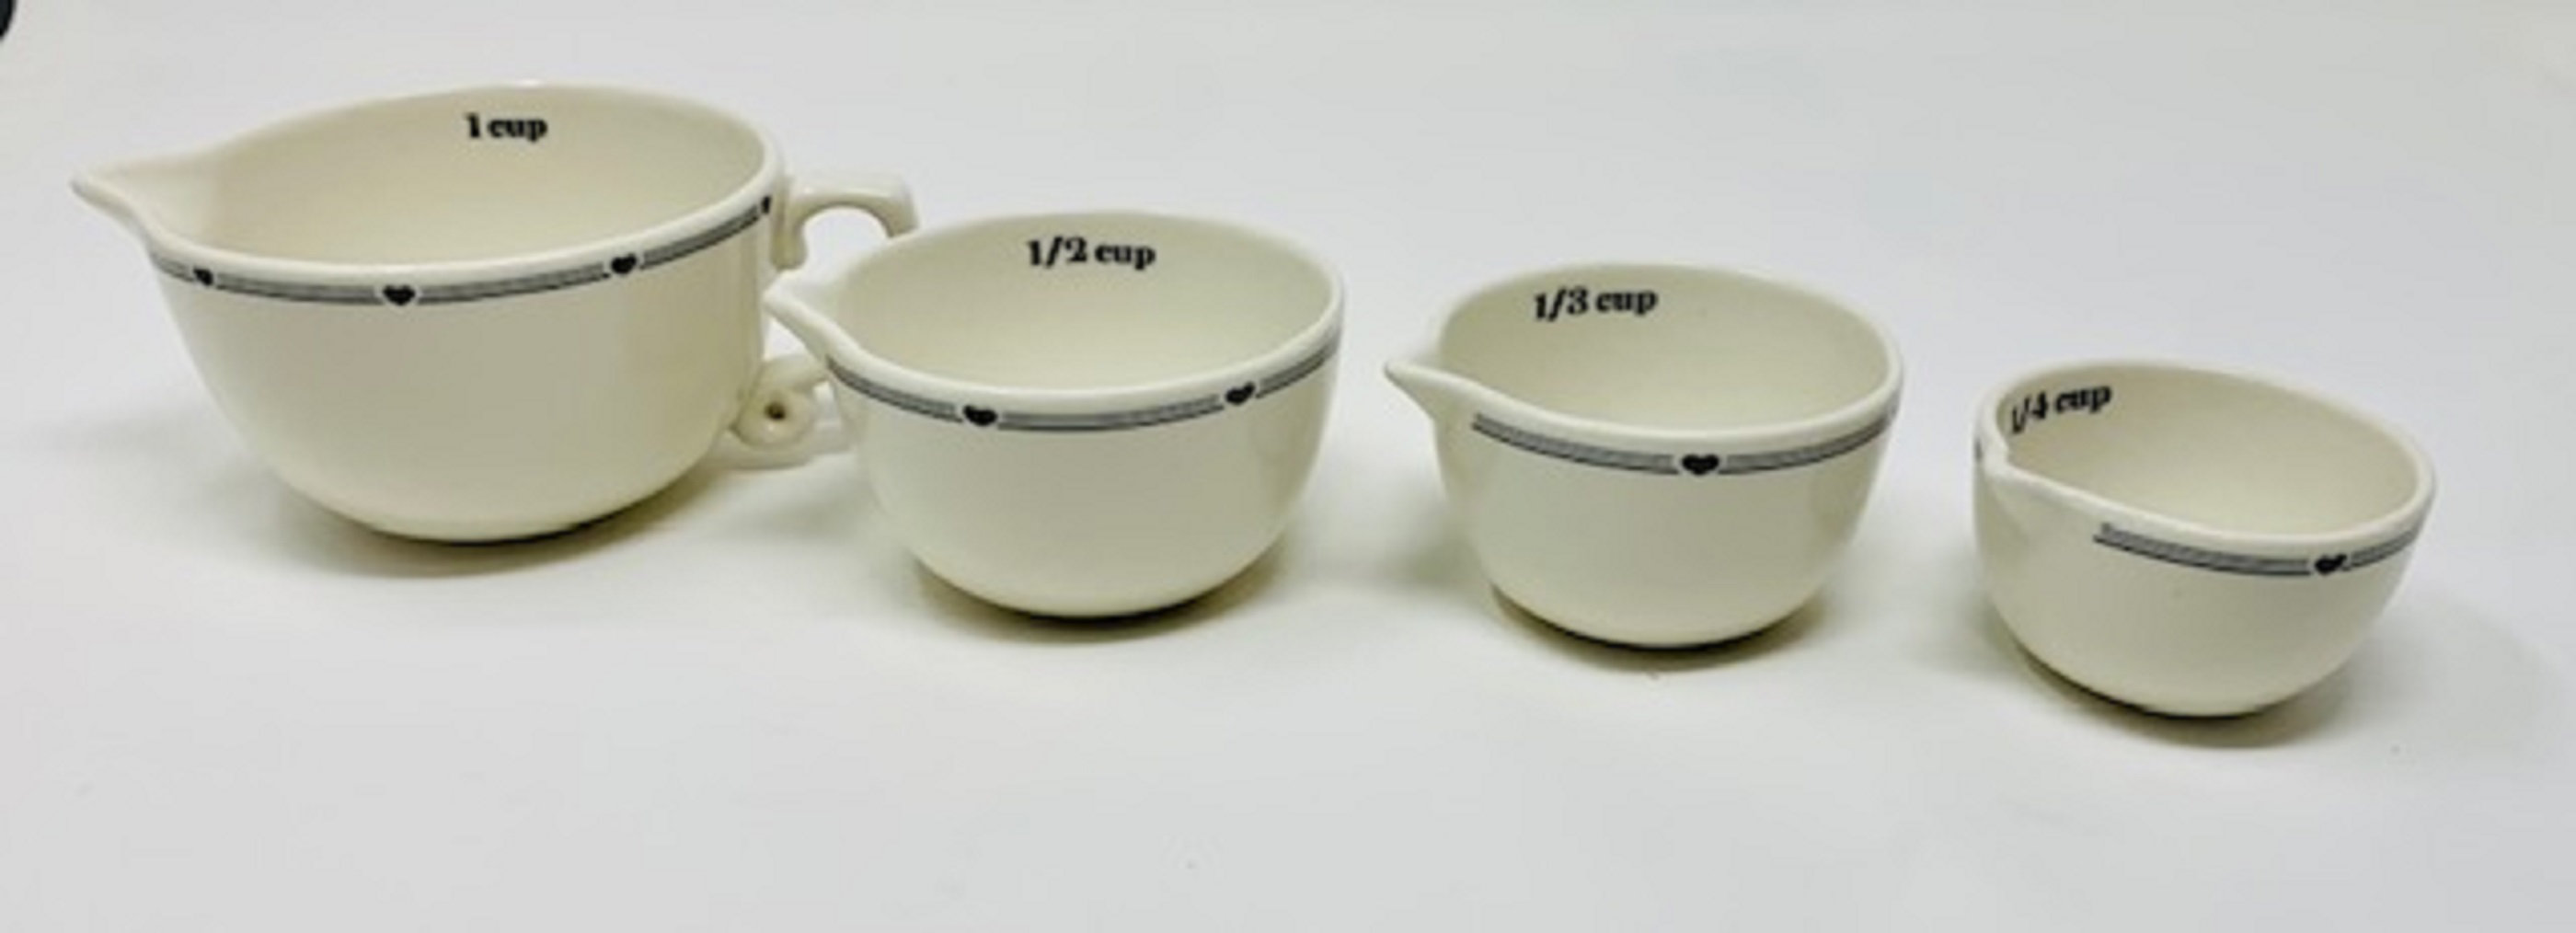 Gingham Pattern Ceramic Measuring Spoon Set